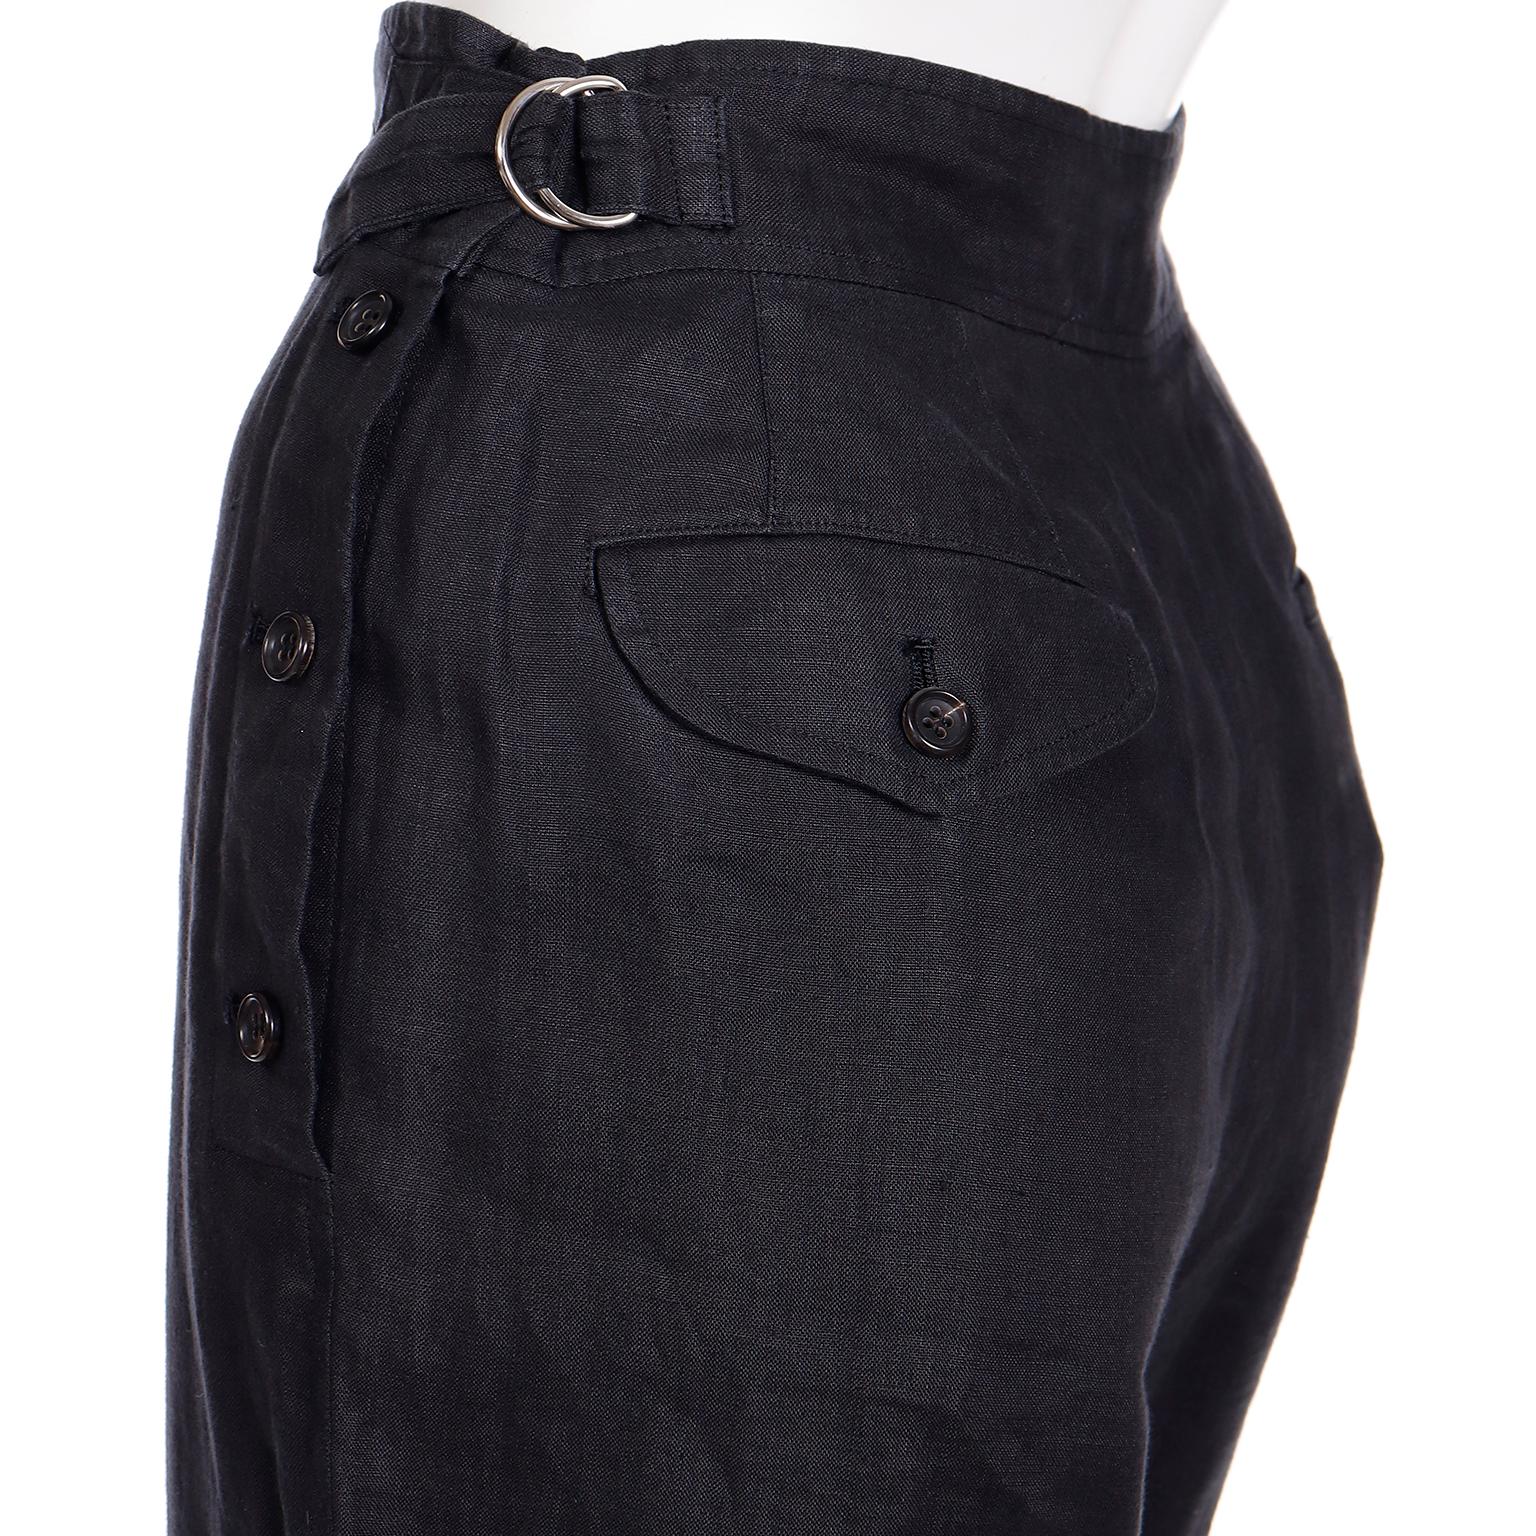 Comme des Garcons S/S 1989 Vintage Black Linen Jacket & Pants Outfit For Sale 13